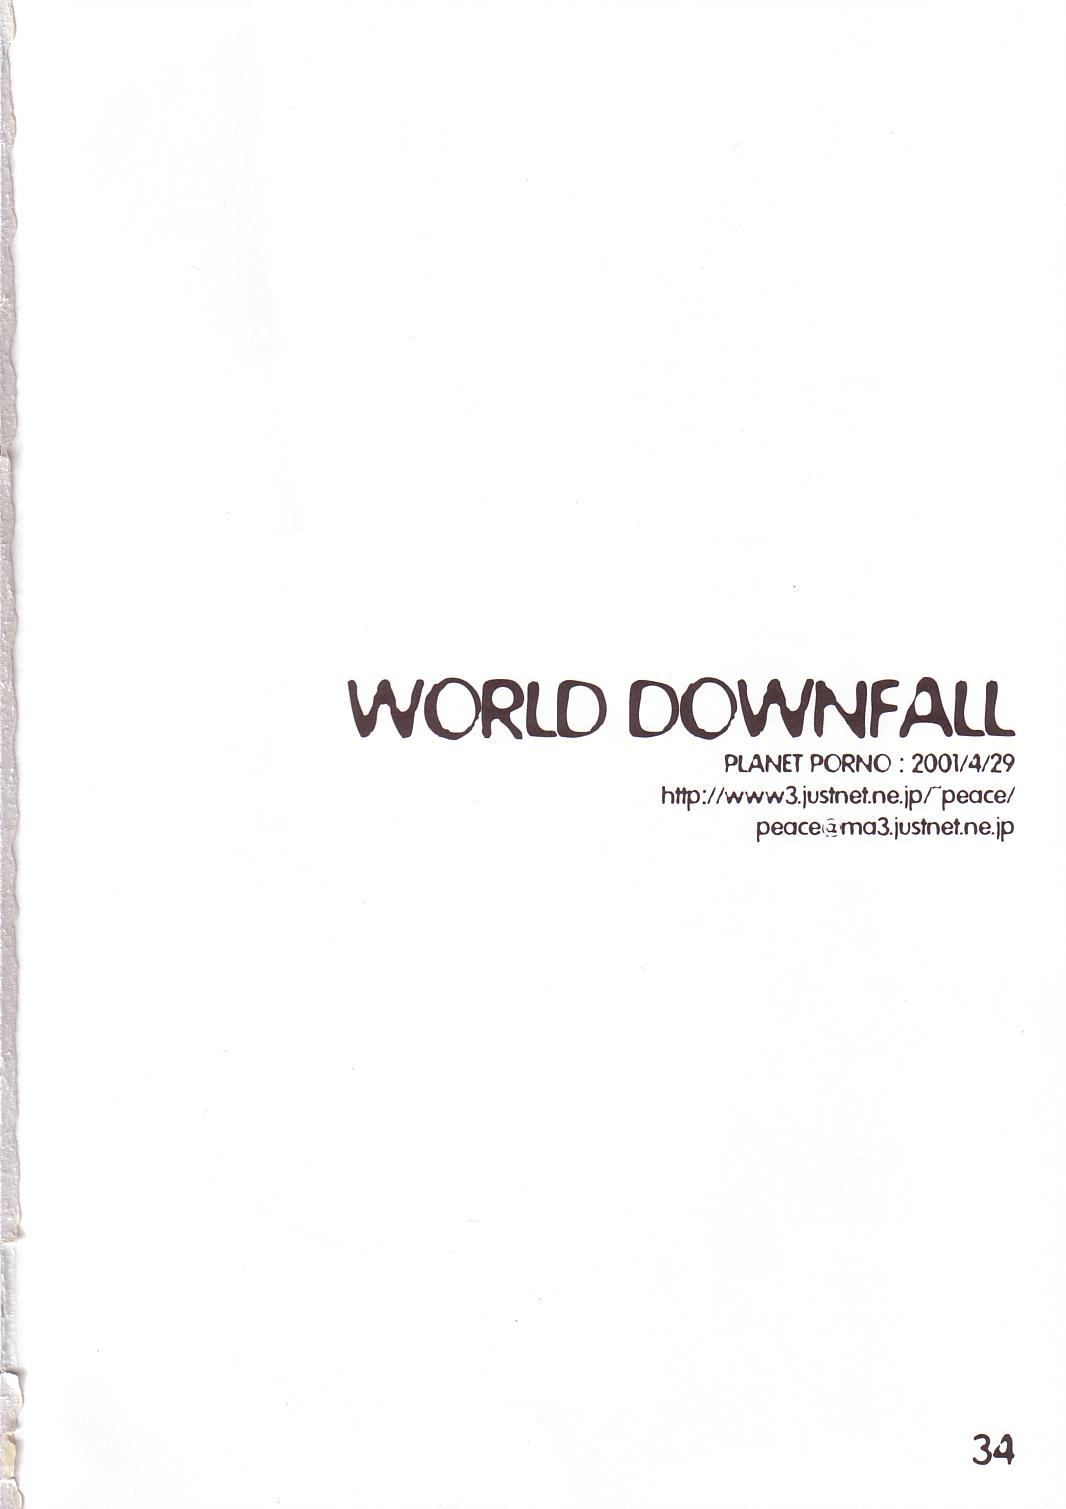 [PlanetPorno] World Downfall (kino no tabi) 